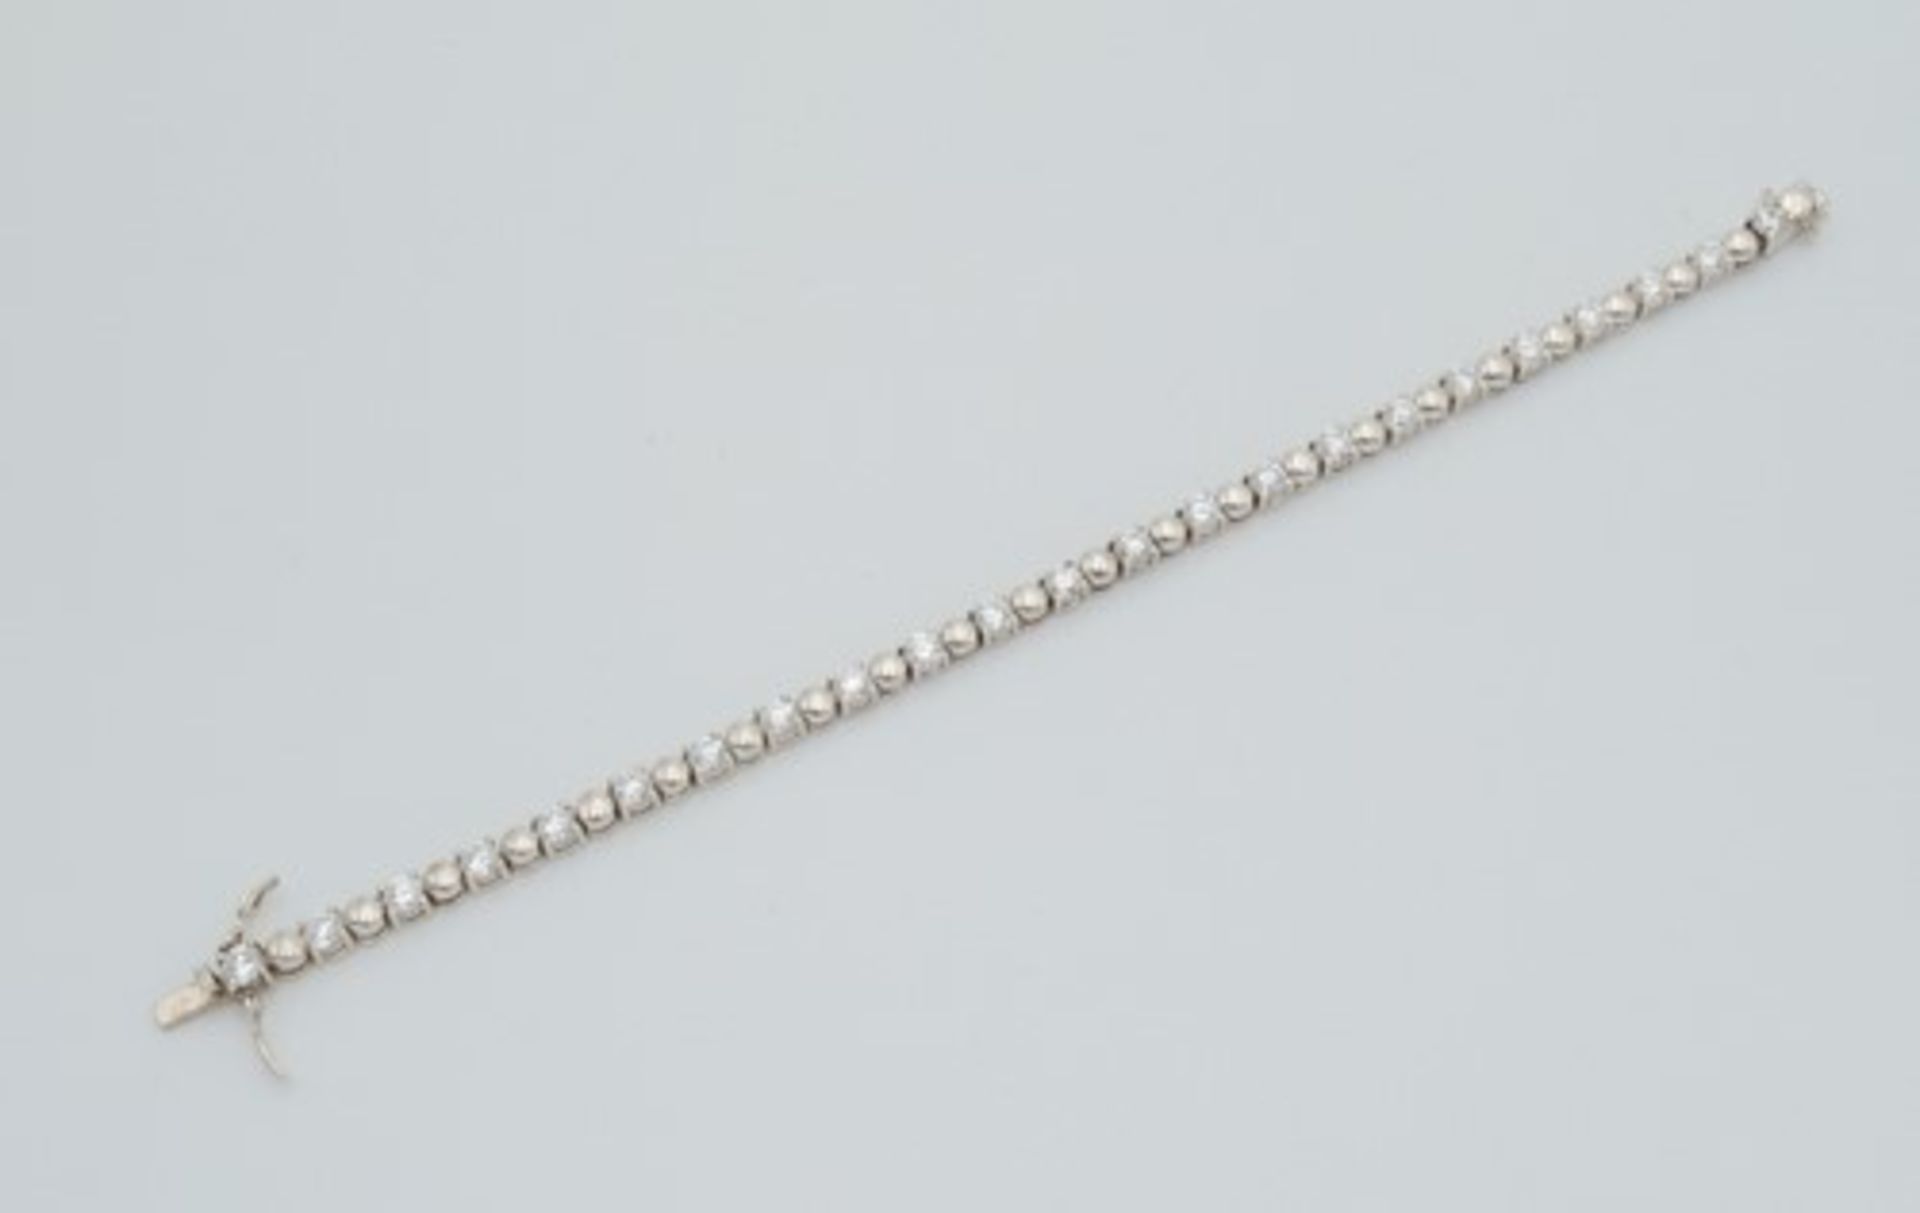 ArmbandSi 925, Krappenfassungen besetzt mit farblosen Schmucksteinen, an kugelförmigen